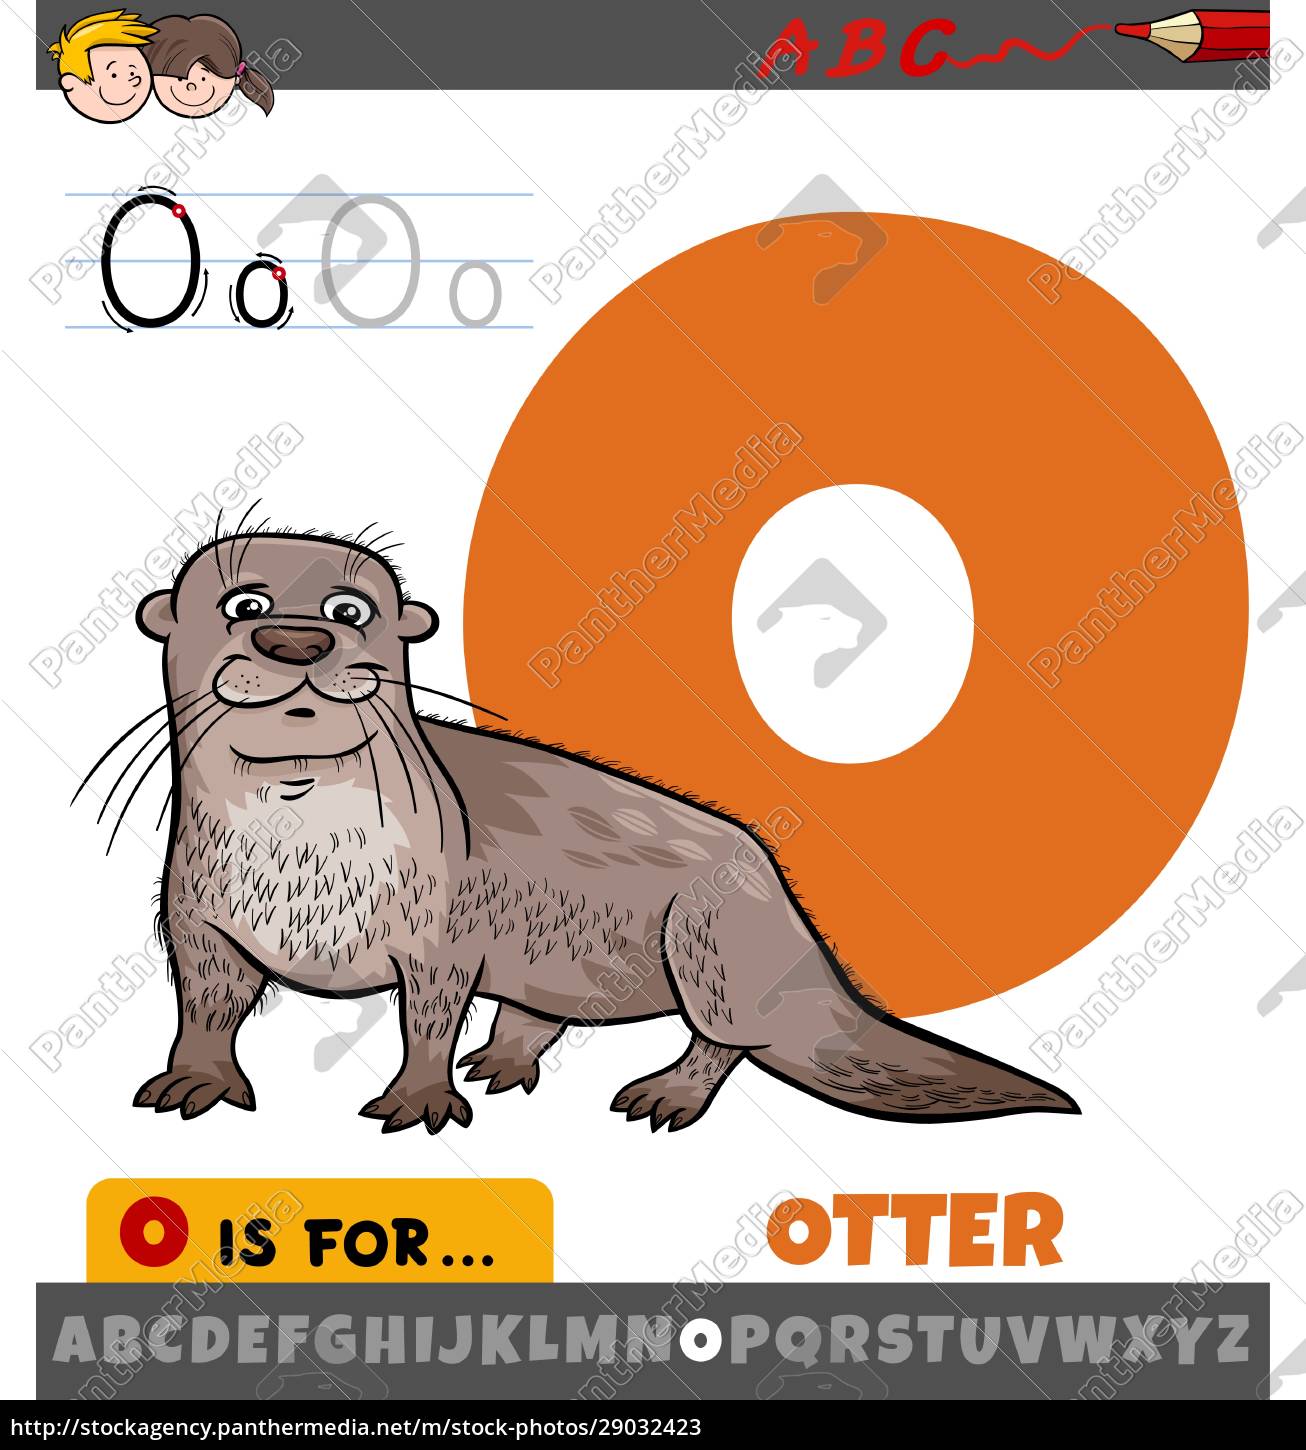 Buchstabe O aus Alphabet mit Ottertiercharakter - Lizenzfreies Bild